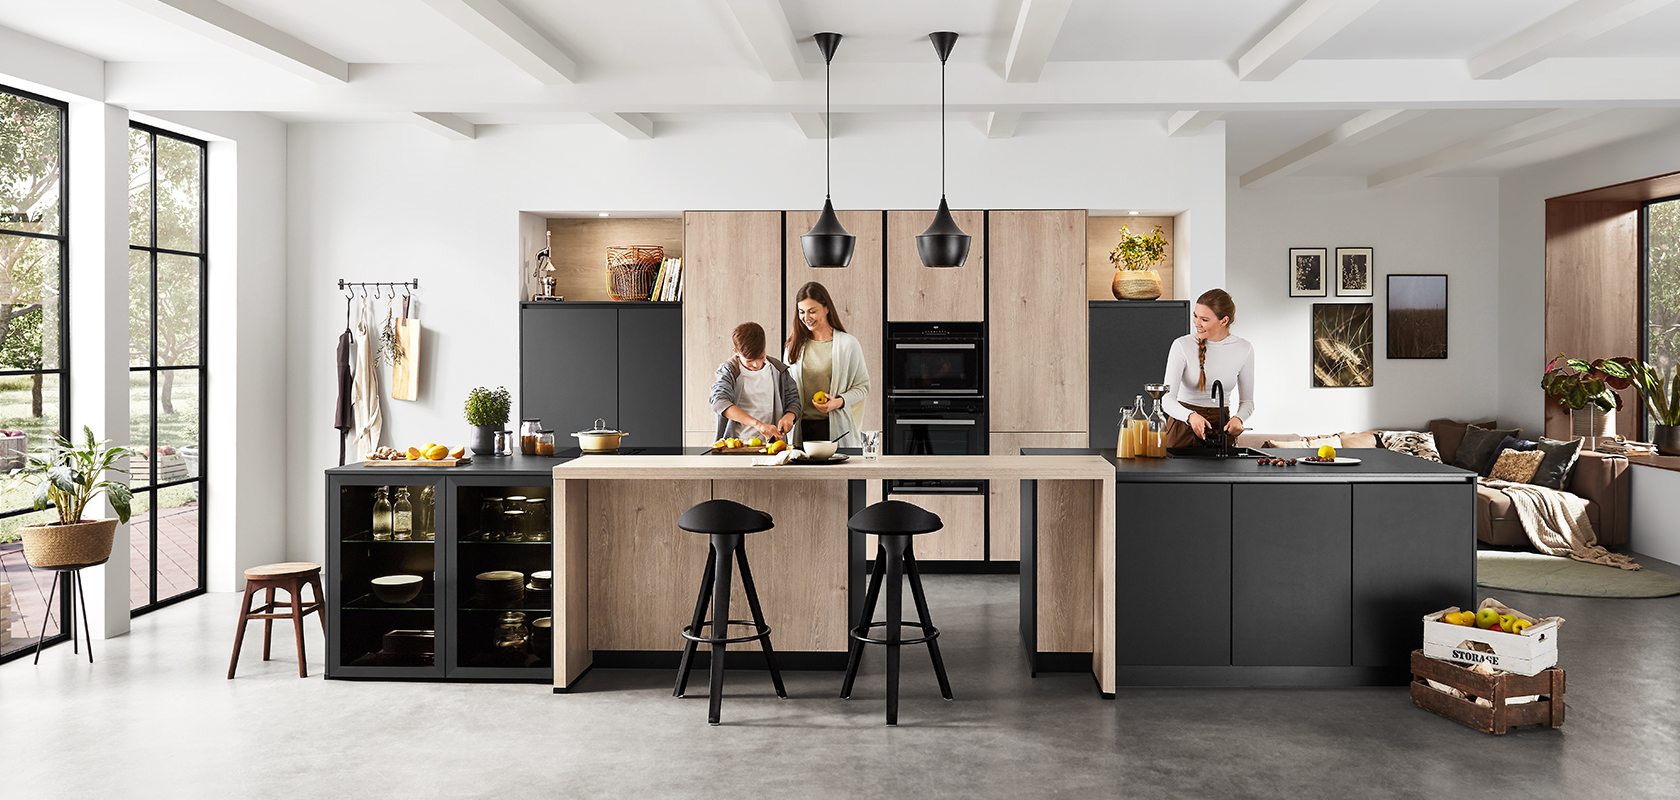 Interior de cocina moderna con un diseño espacioso y limpio que muestra a dos personas cocinando y charlando, resaltando la funcionalidad y el estilo contemporáneo.